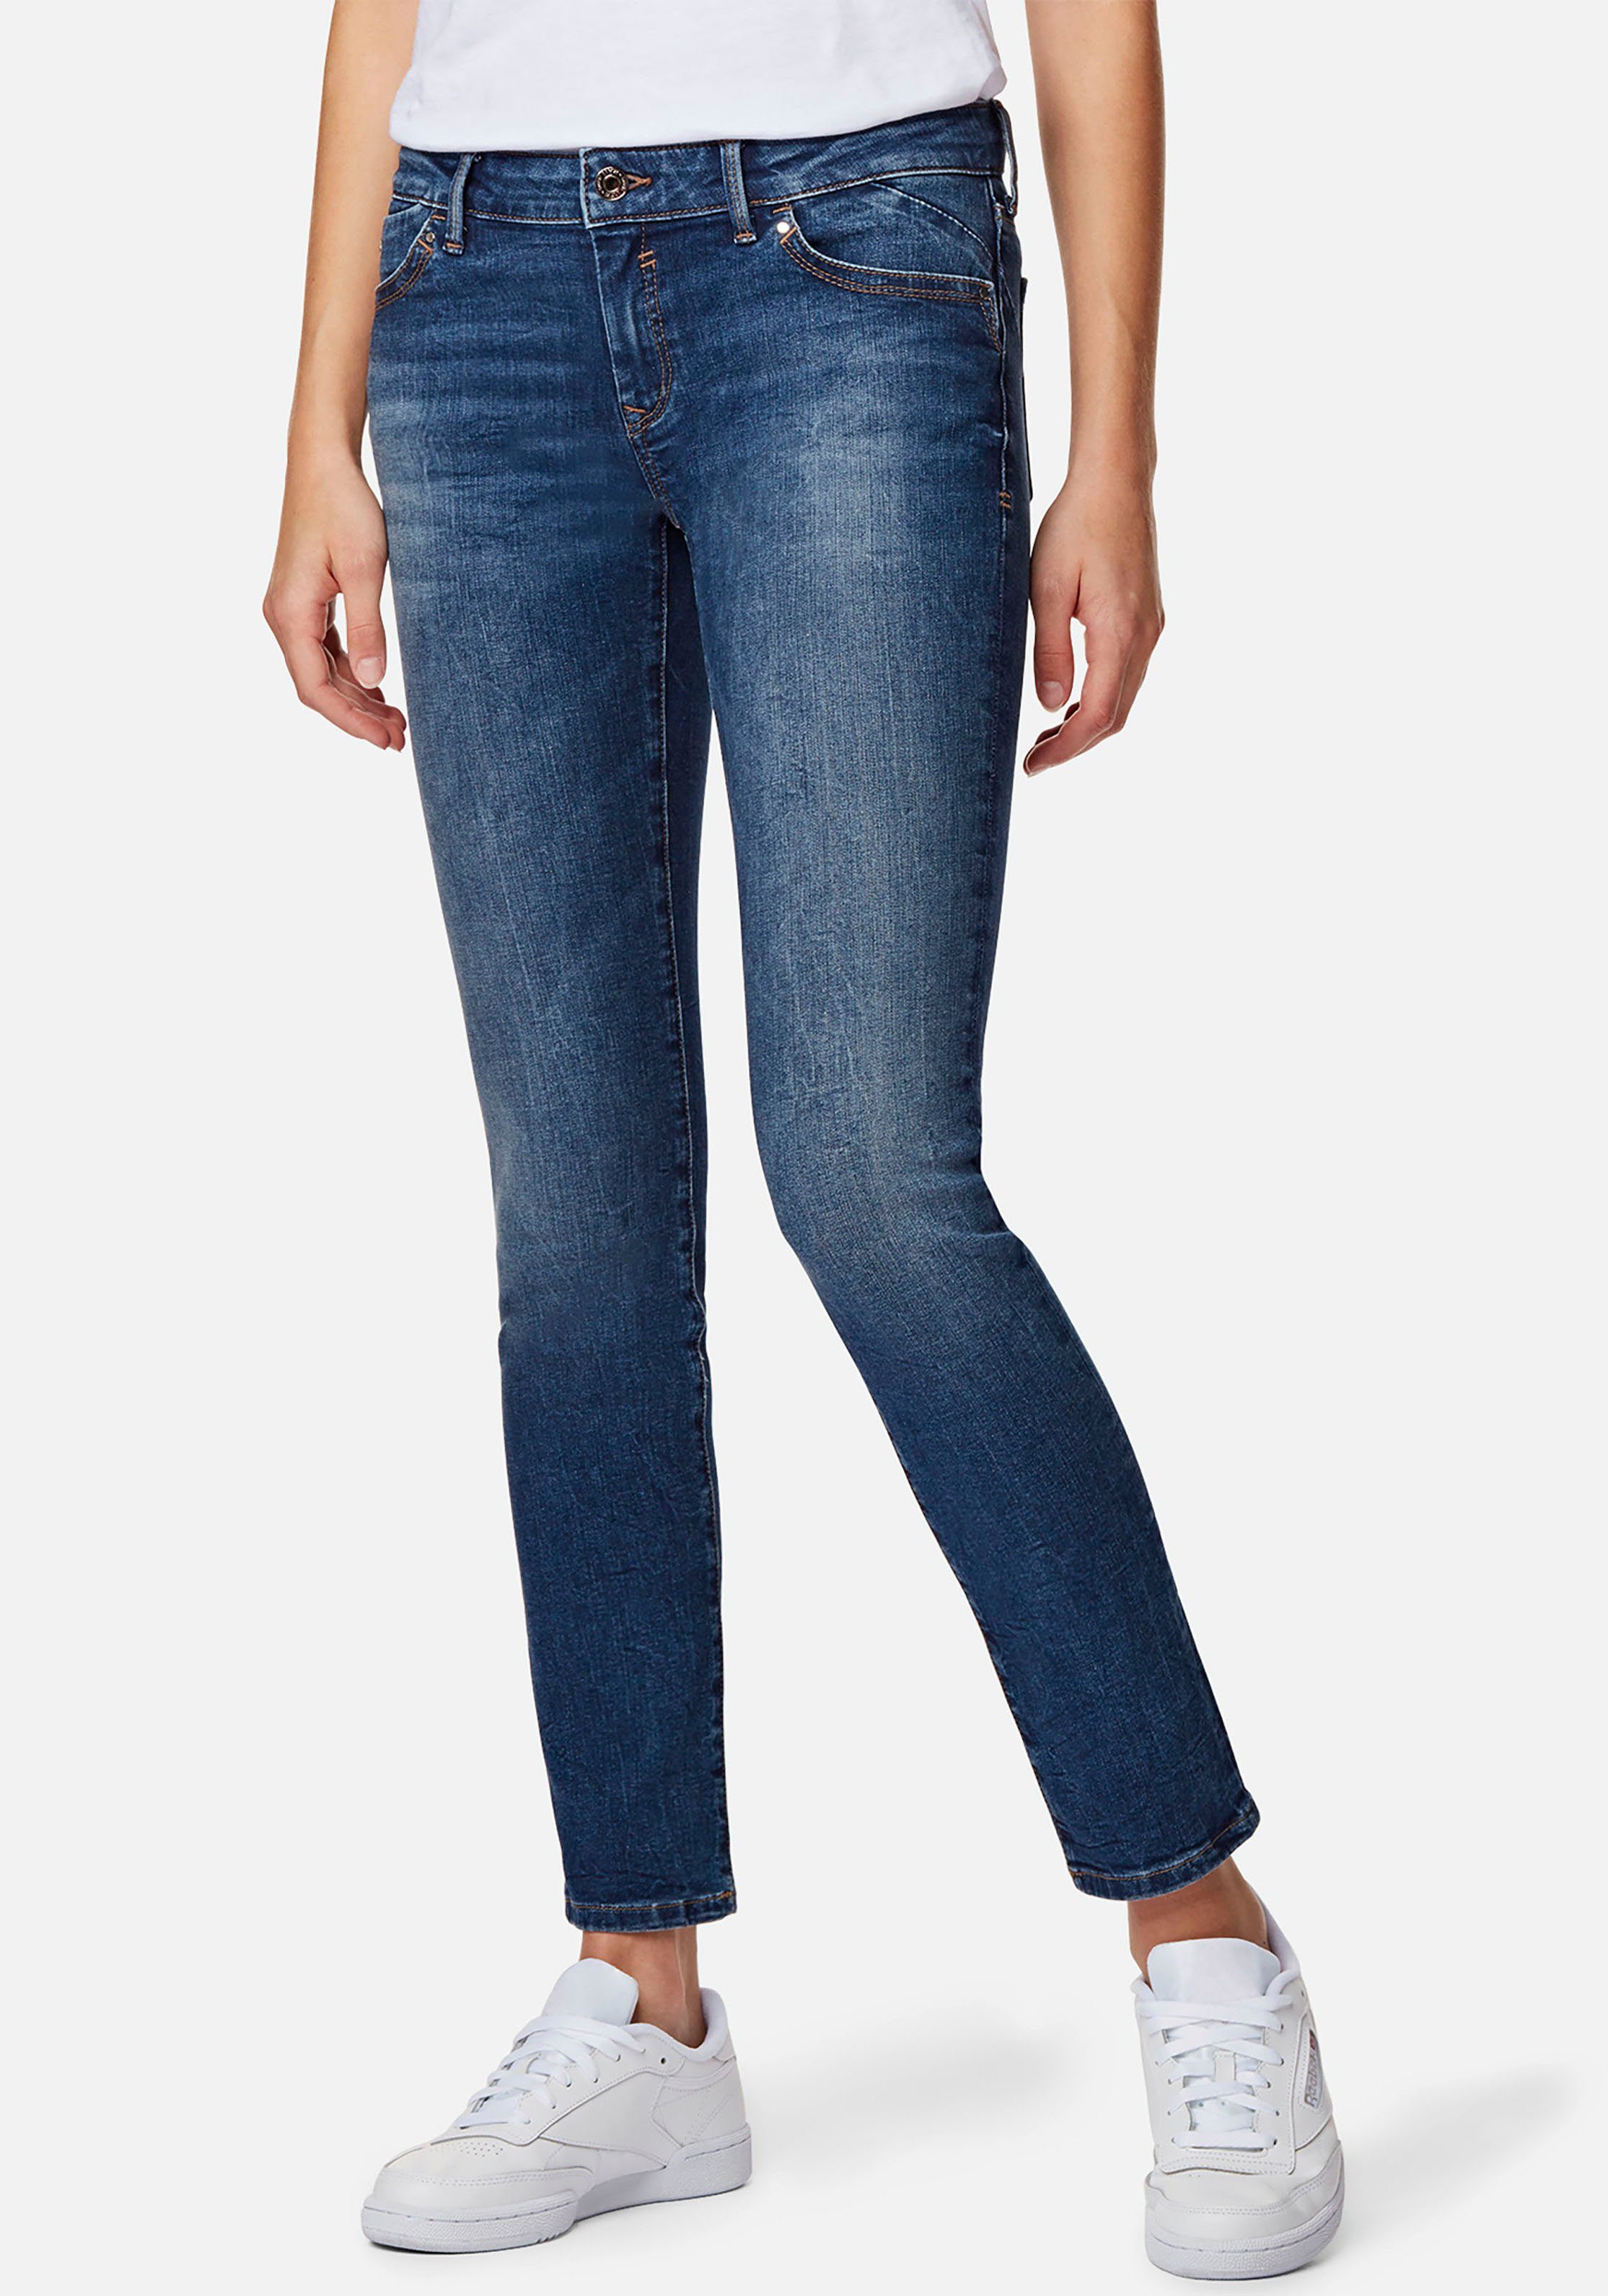 Kangoeroe Dragende cirkel Zelfgenoegzaamheid Mavi Jeans Skinny fit jeans LINDY-MA Damesjeans met stretch voor een mooie  pasvorm makkelijk gekocht | OTTO